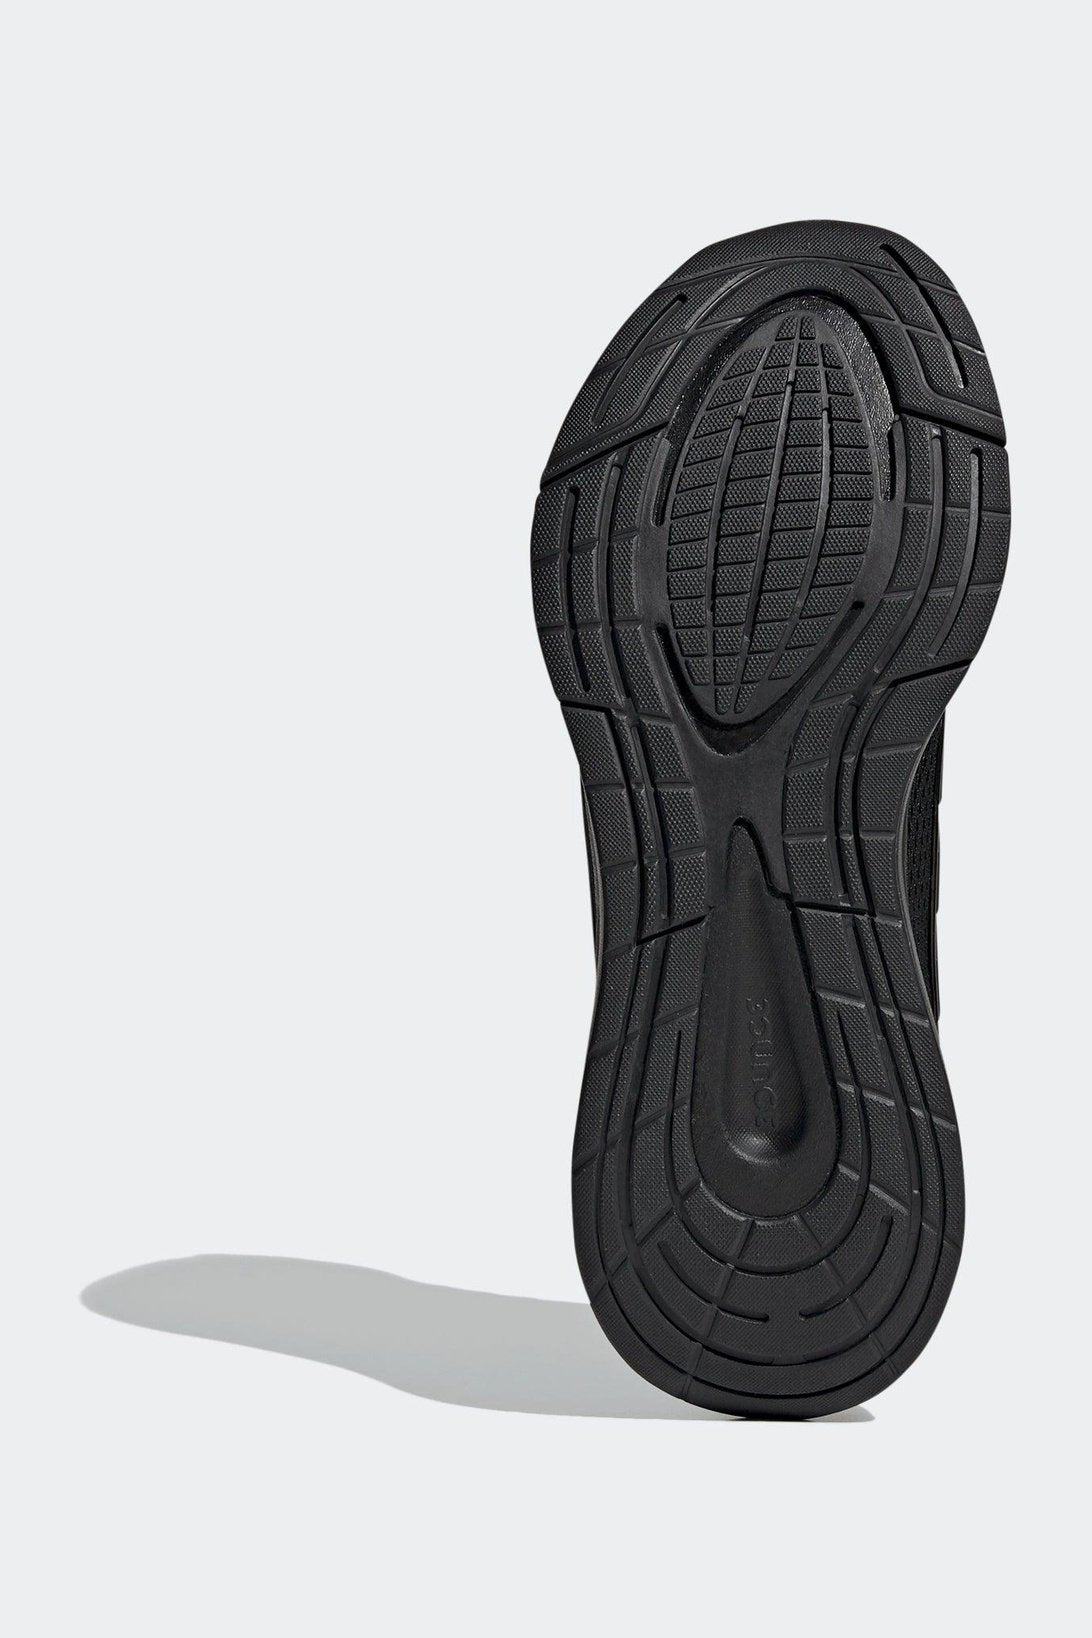 ADIDAS - נעלי ריצה EQ21 בצבע שחור - MASHBIR//365